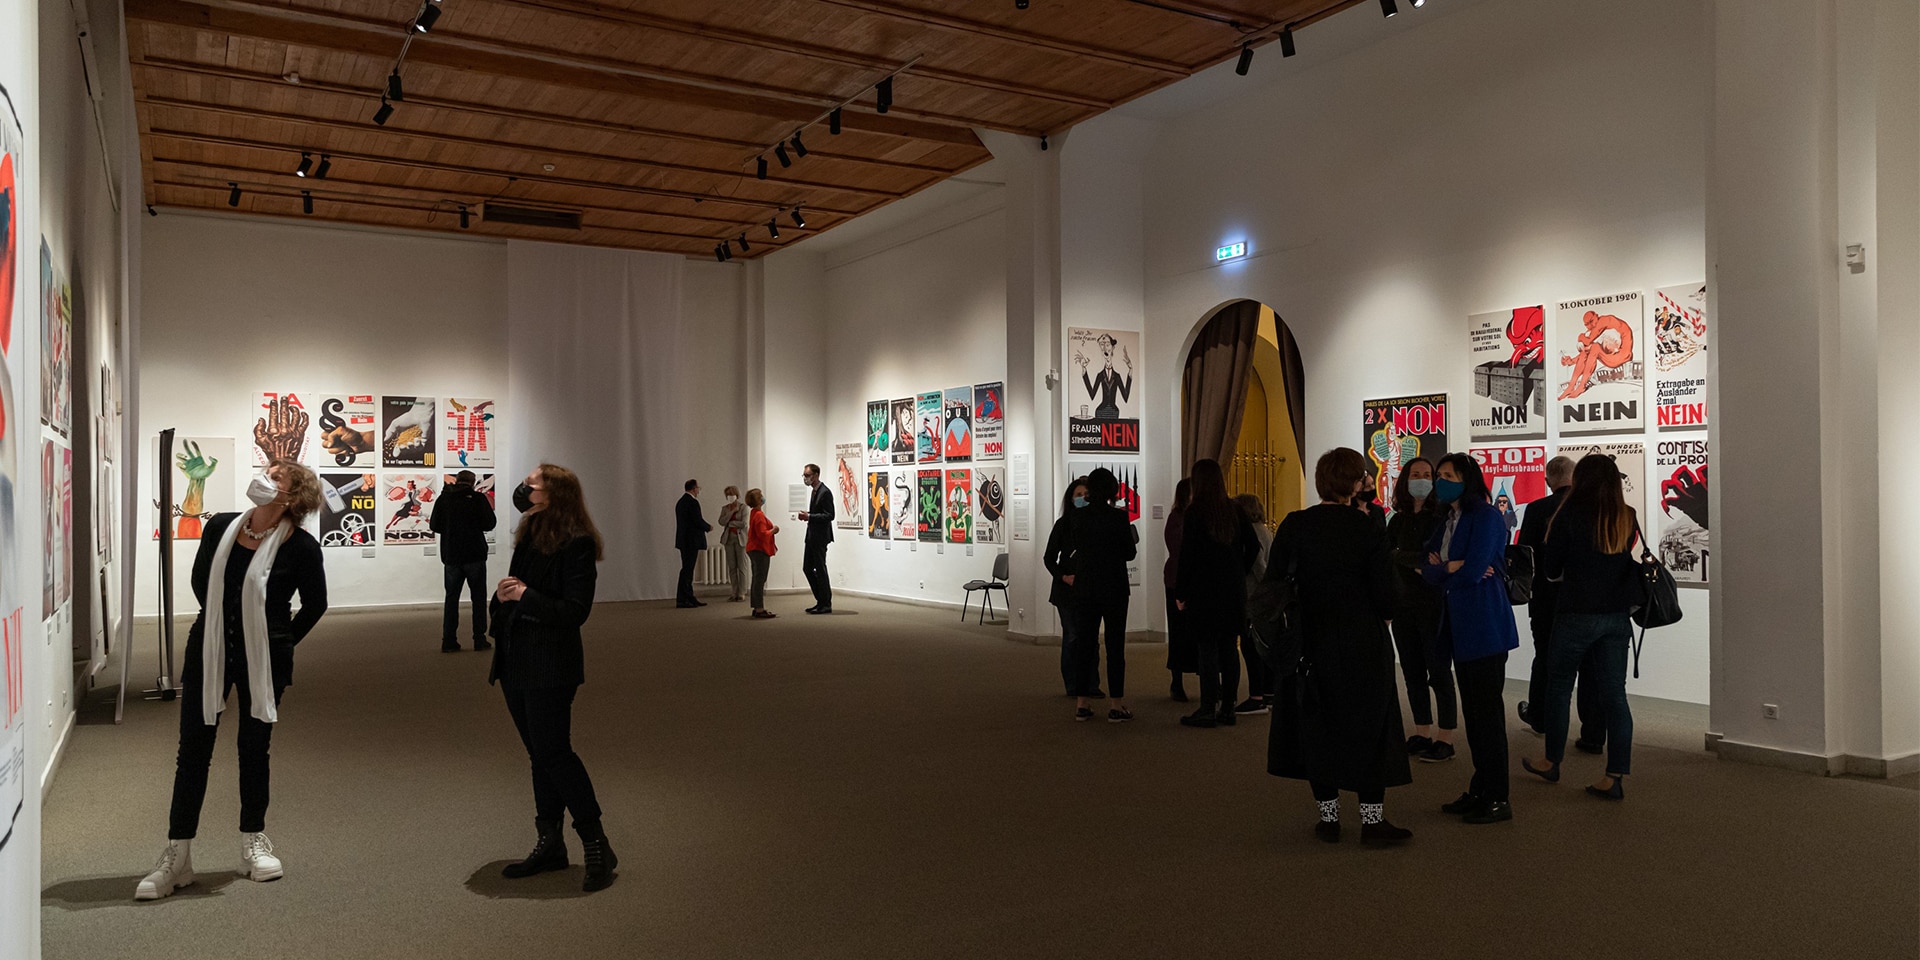   In Vilnius betrachten die Besucherinnen und Besucher der Ausstellung Plakate zu schweizerischen Abstimmungsvorlagen der letzten 100 Jahre. 